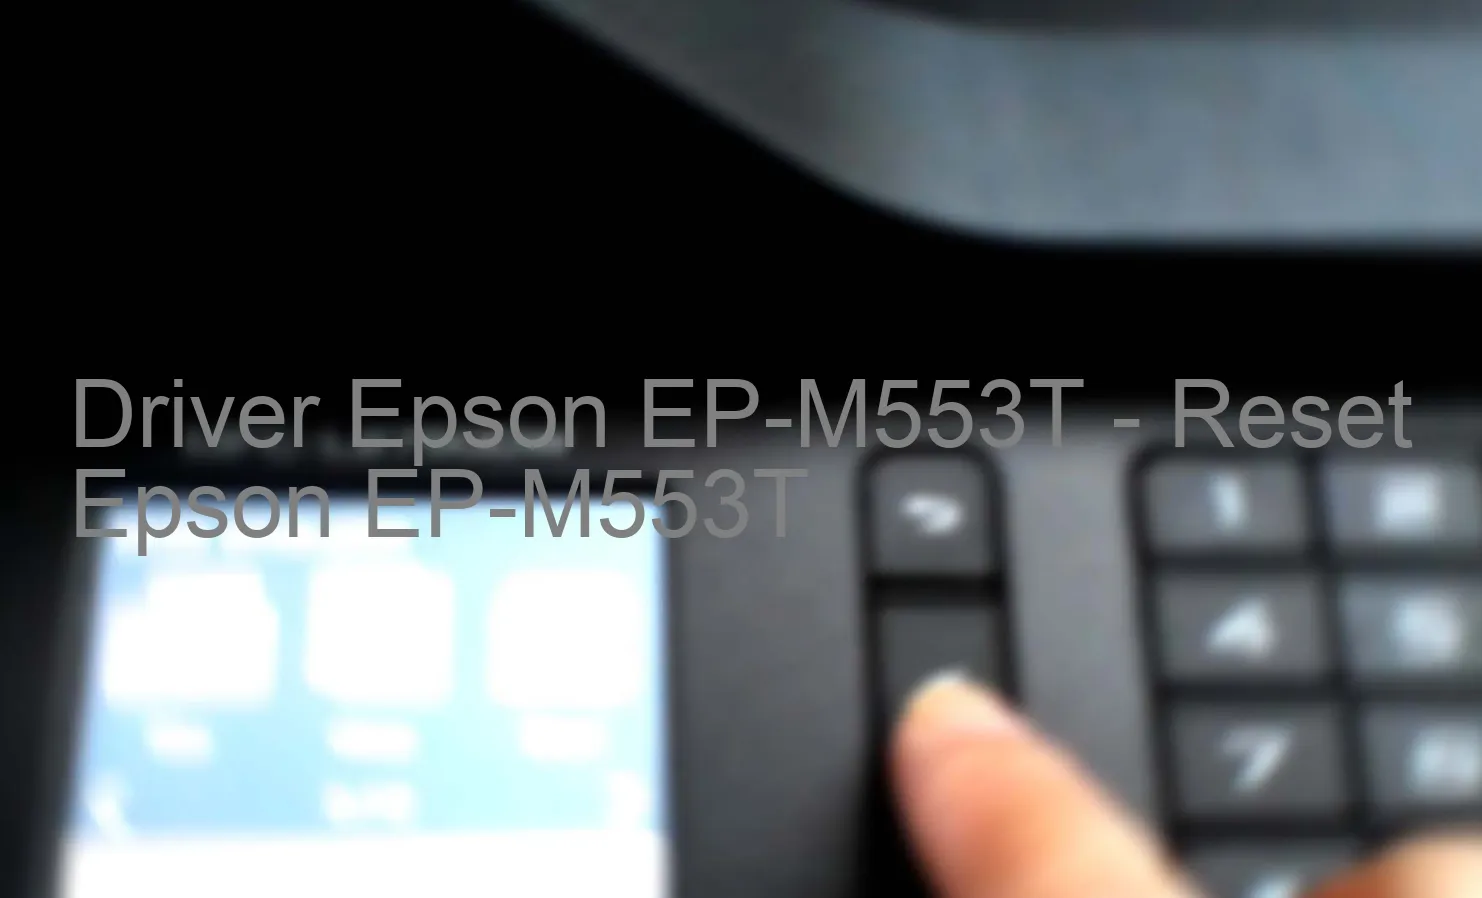 Epson EP-M553Tのドライバー、Epson EP-M553Tのリセットソフトウェア